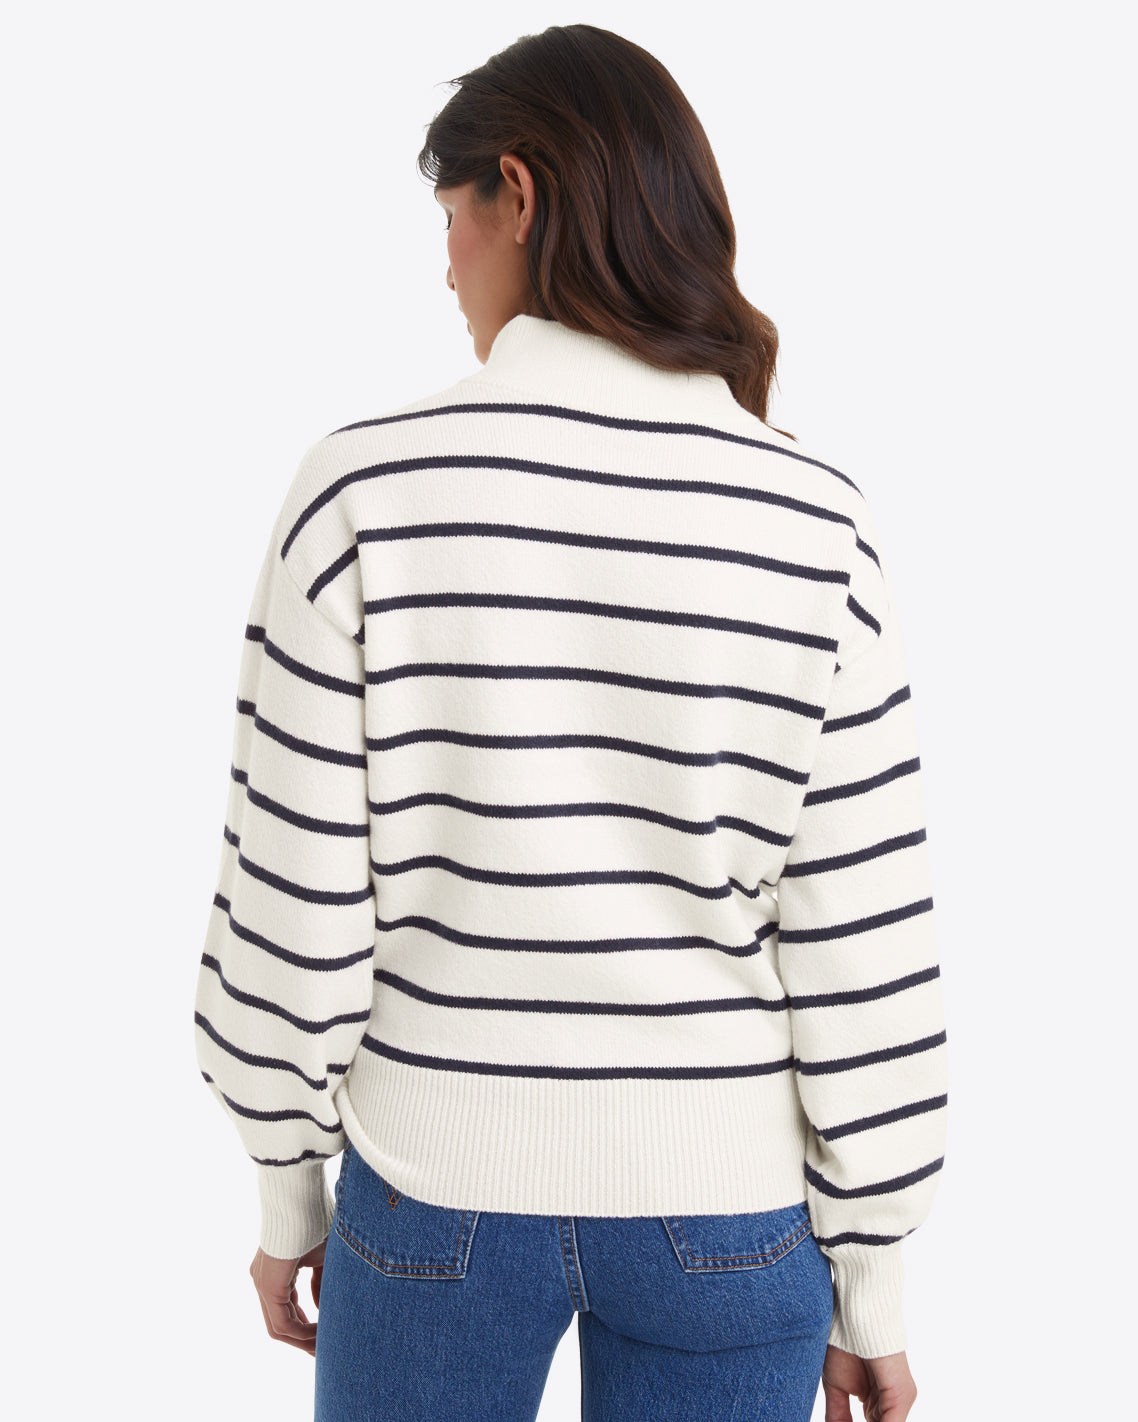 Striped Quarter Zip Sweater in Mariner Stripe